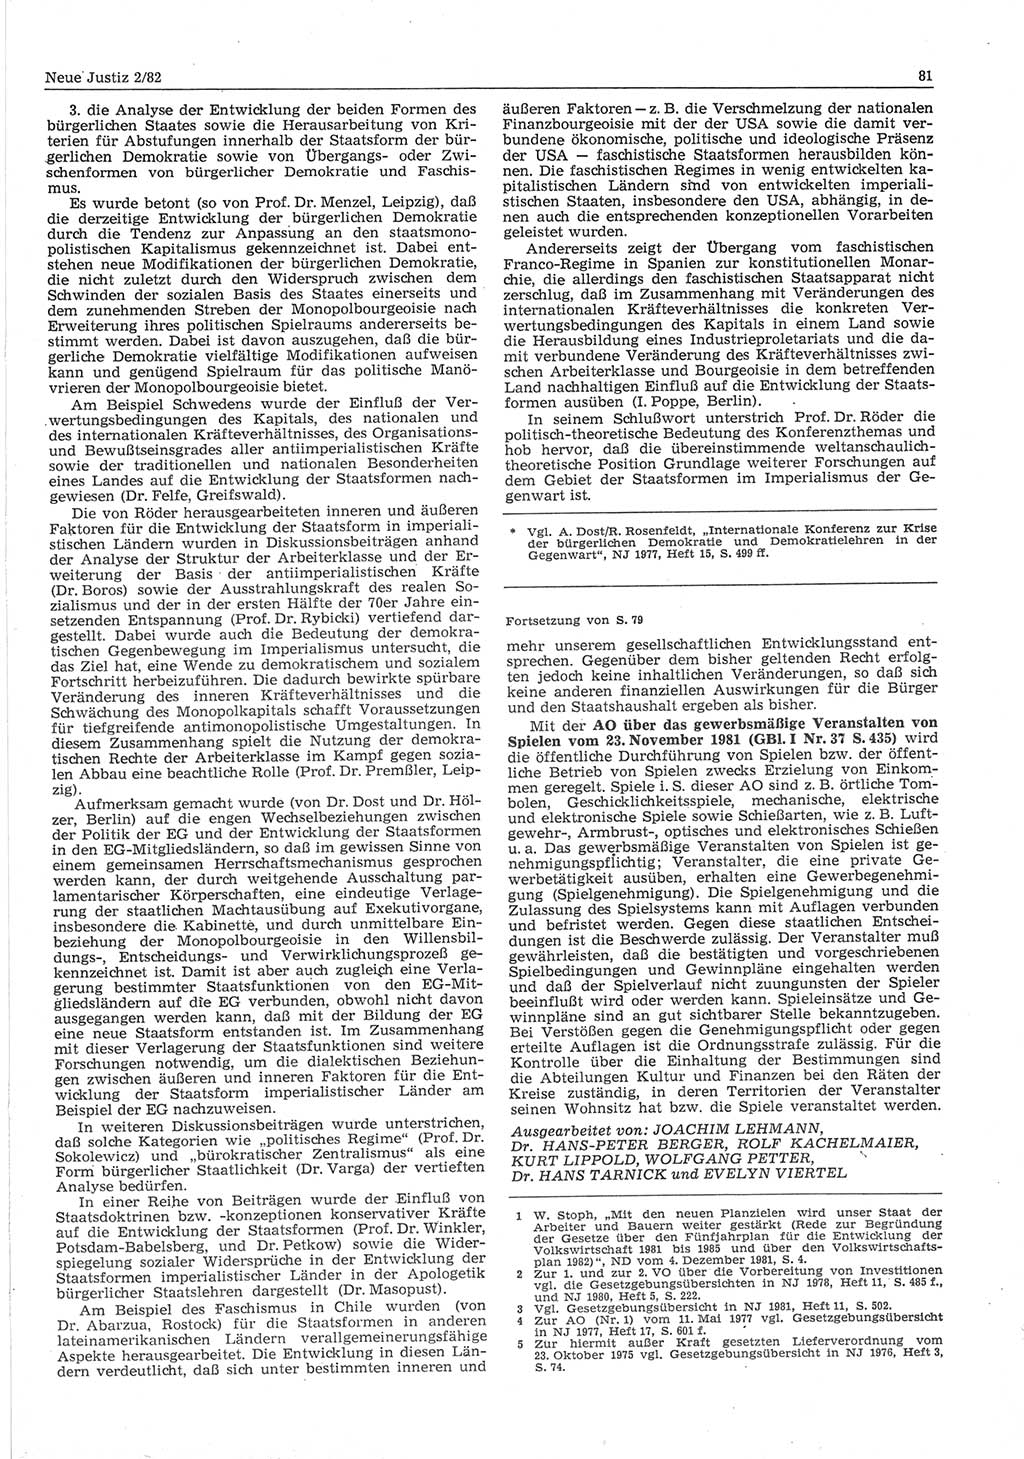 Neue Justiz (NJ), Zeitschrift für sozialistisches Recht und Gesetzlichkeit [Deutsche Demokratische Republik (DDR)], 36. Jahrgang 1982, Seite 81 (NJ DDR 1982, S. 81)